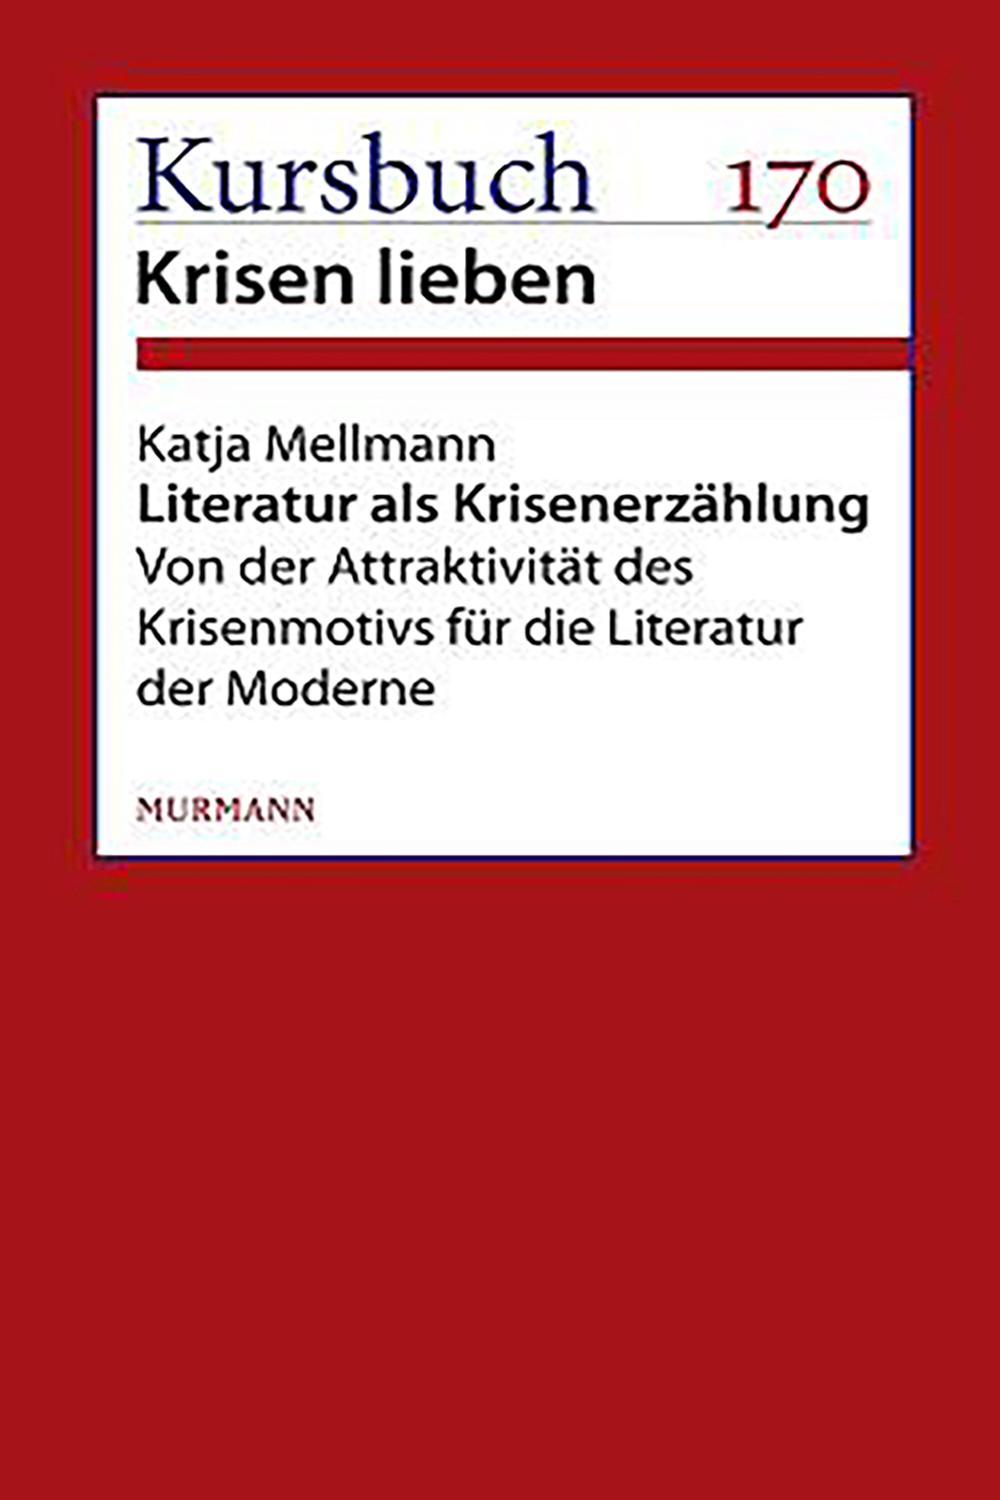 Literatur als Krisenerzählung - Katja Mellmann